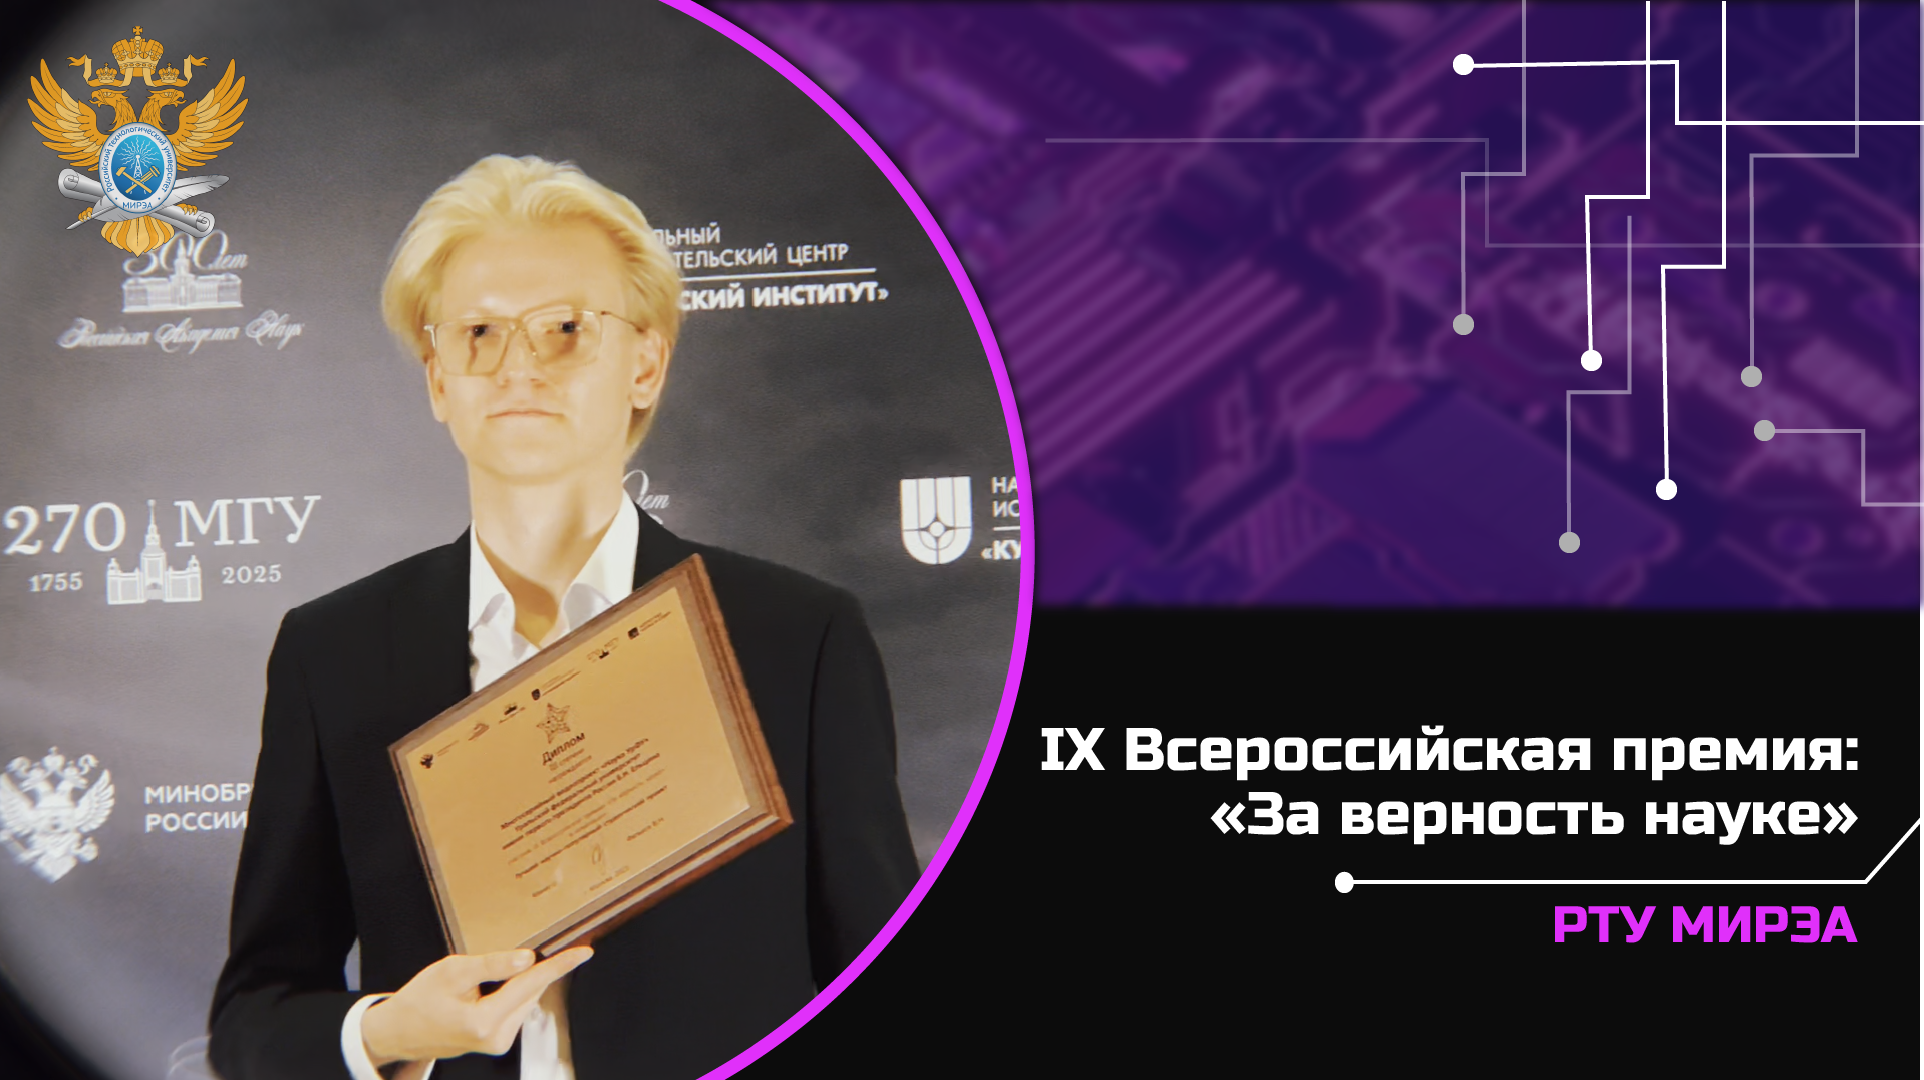 IX Всероссийская премия: «За верность науке»